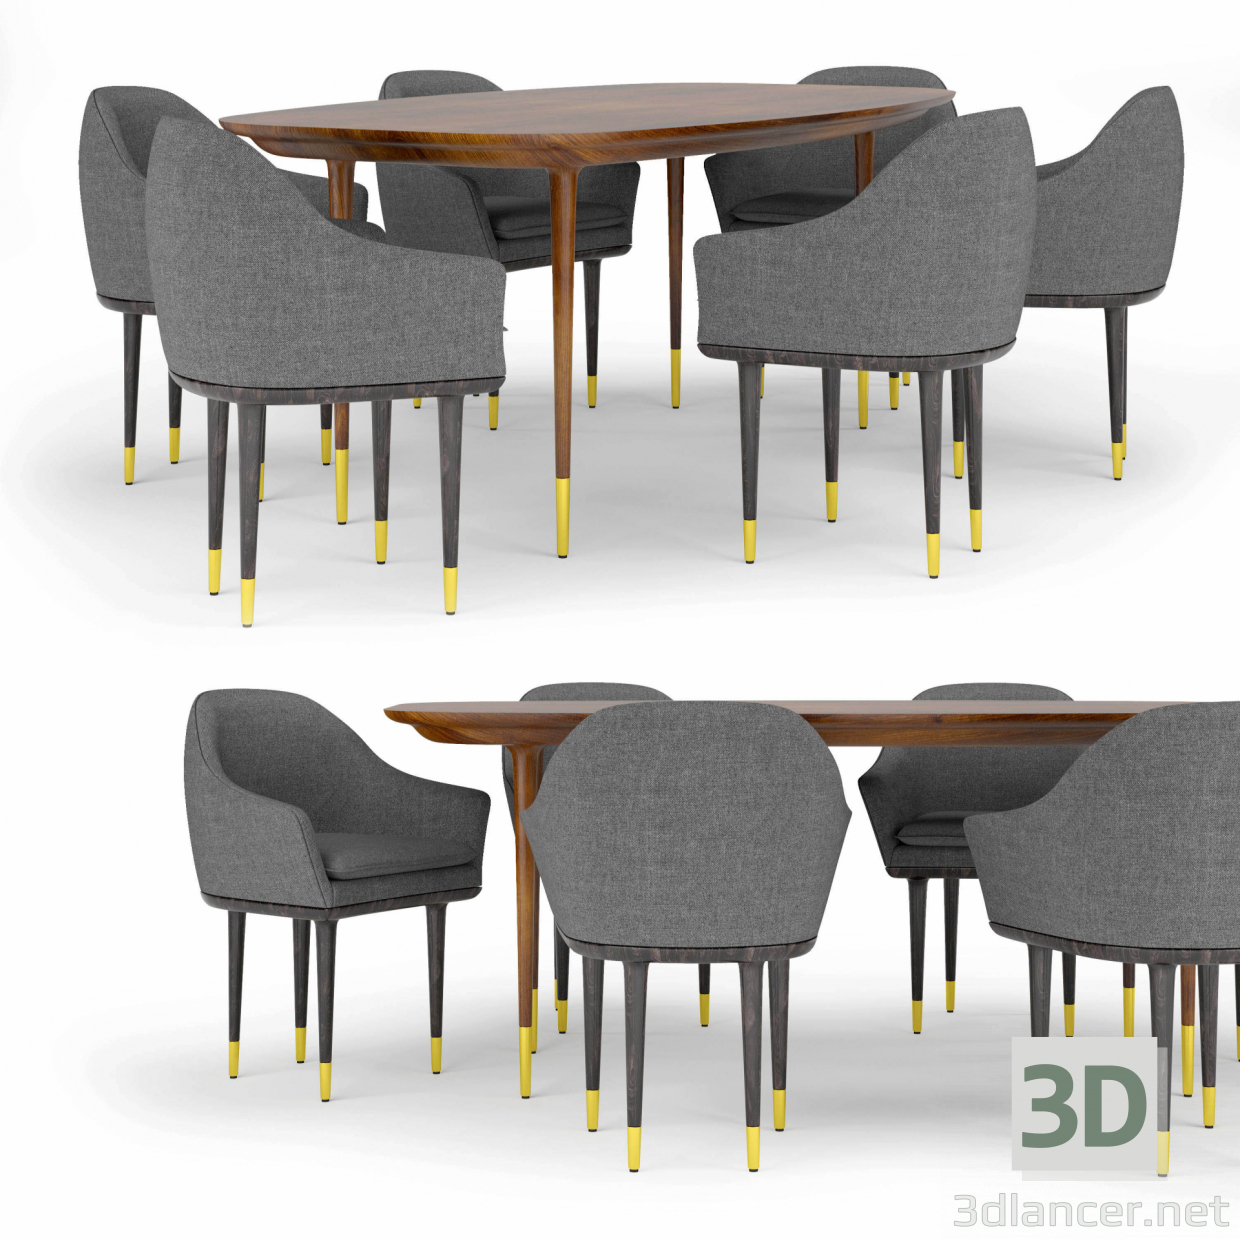 Stellar Works Lunar Lounge Tisch und Stühle 3D-Modell kaufen - Rendern